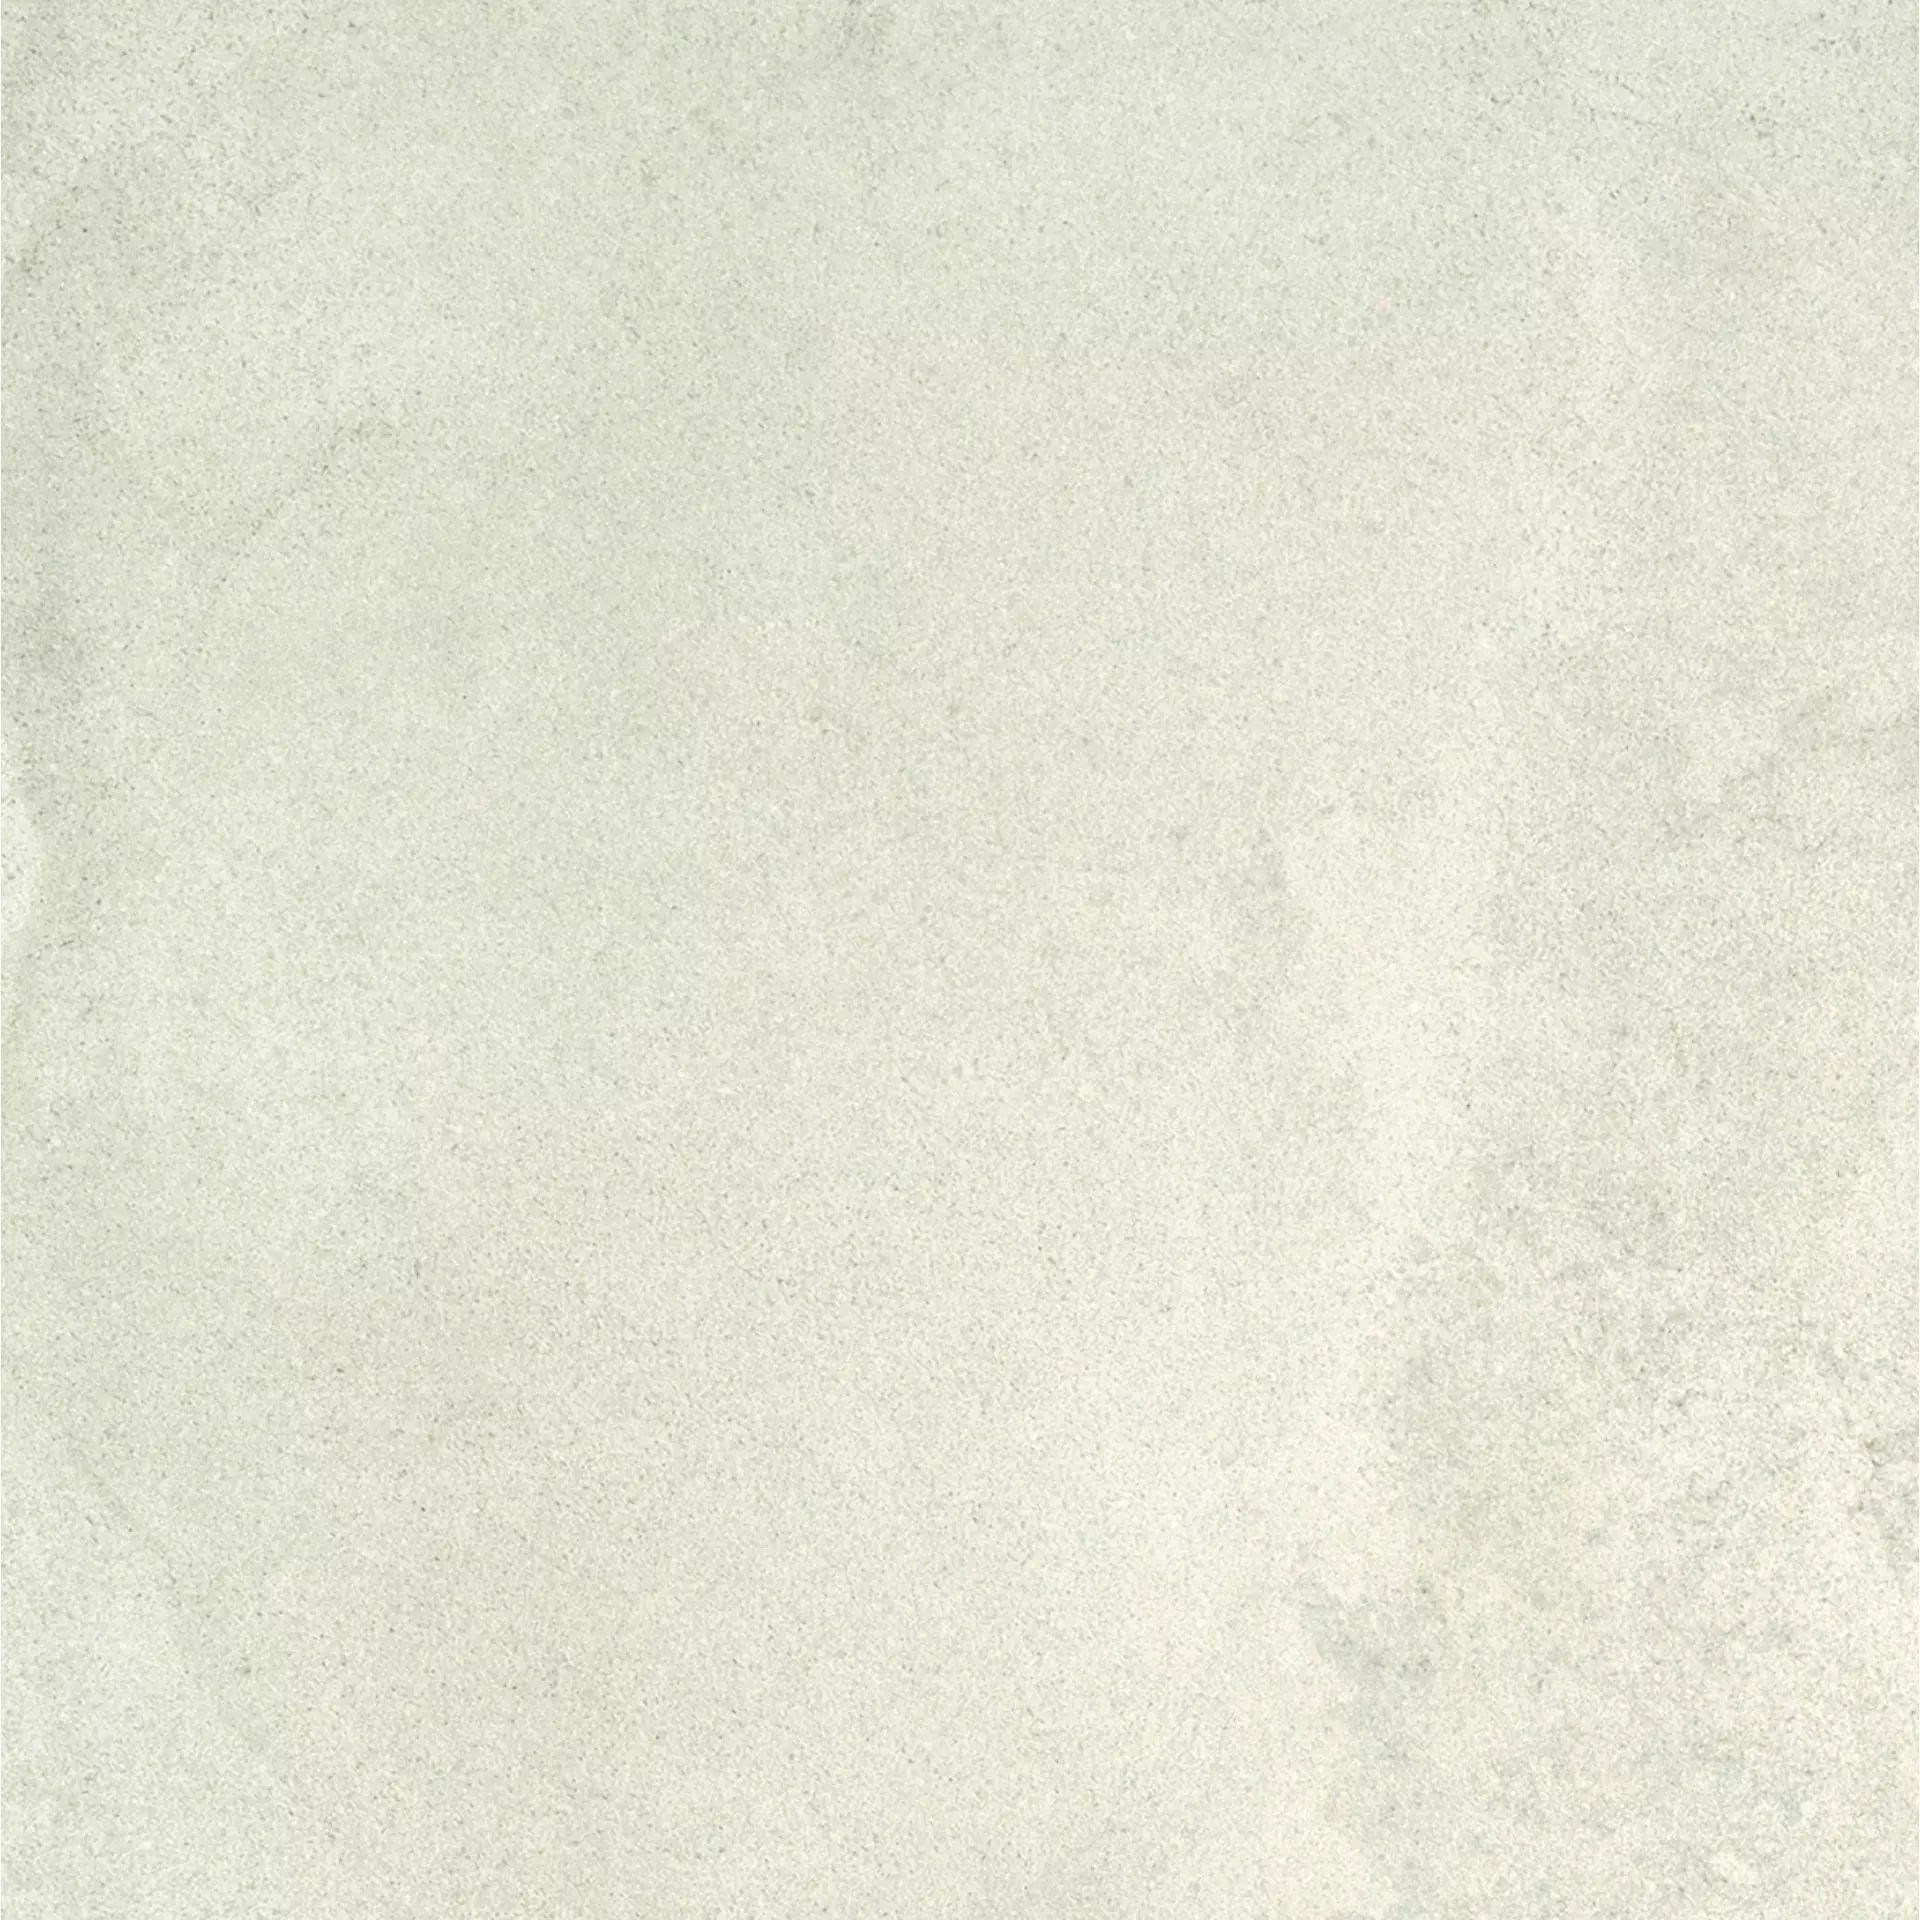 Ergon Stone Project White Naturale Controfalda White E1CW natur 60x60cm rektifiziert 9,5mm